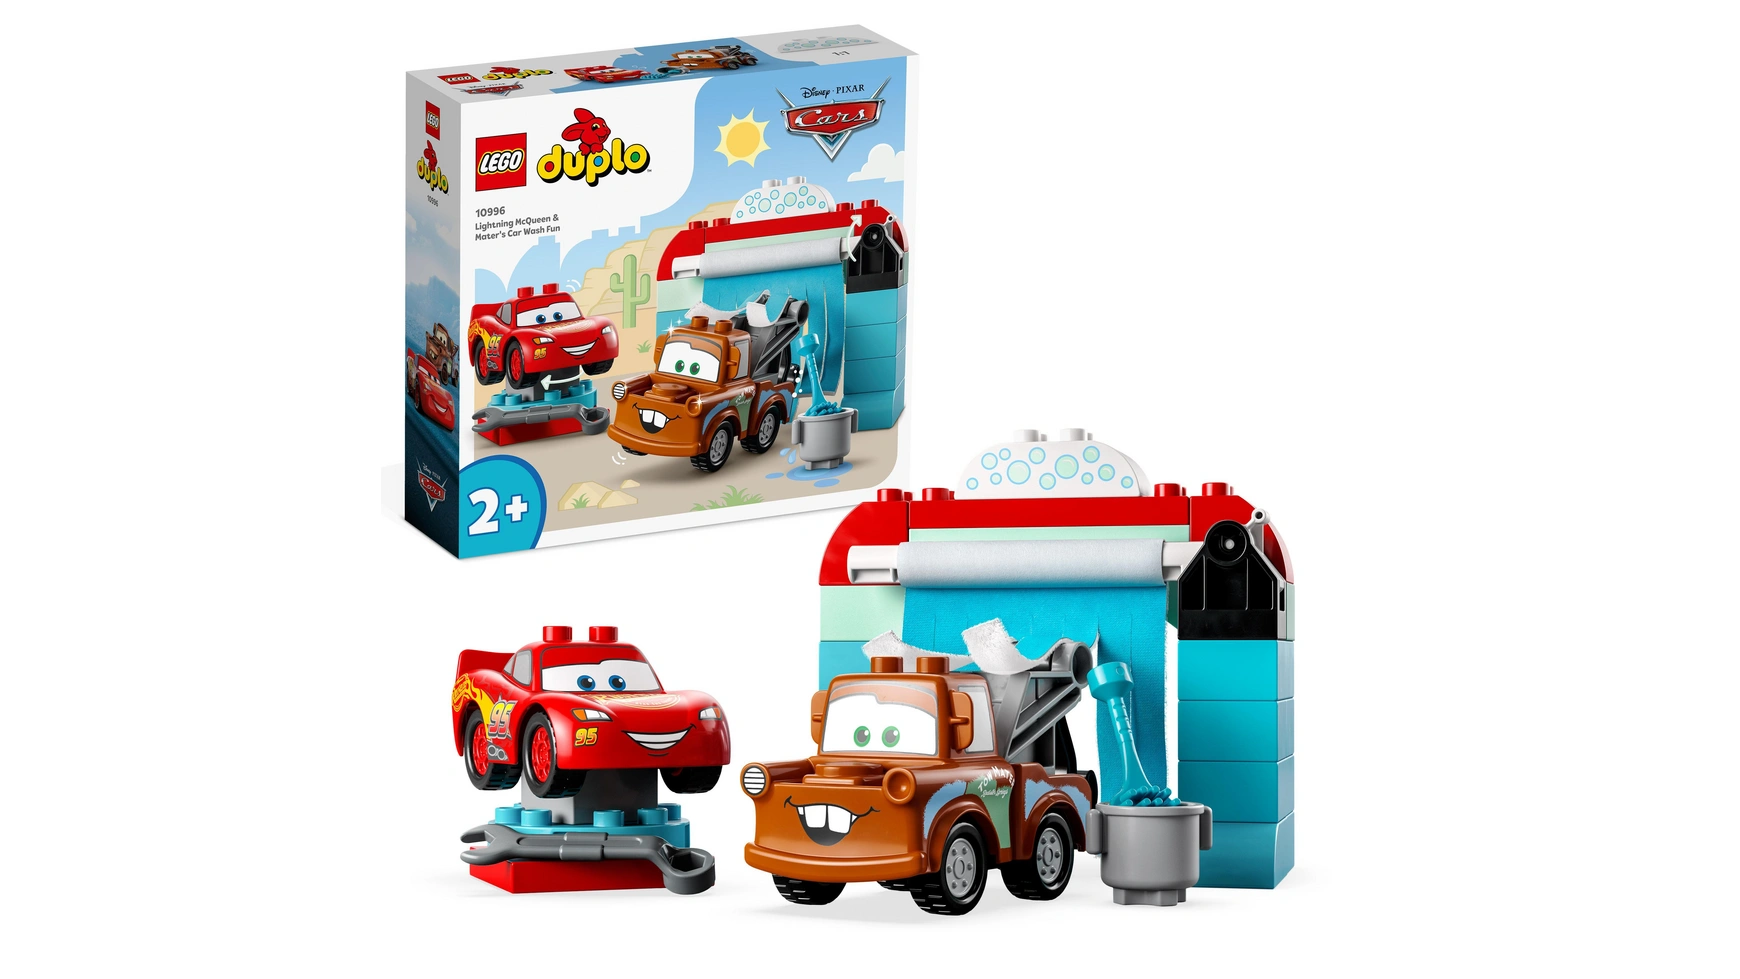 Lego DUPLO Тачки Диснея и Пиксара Молния МакКуин и Мэтр на автомойке lego duplo экскаватор и грузовик креативная игрушка для детей от 2 лет и старше